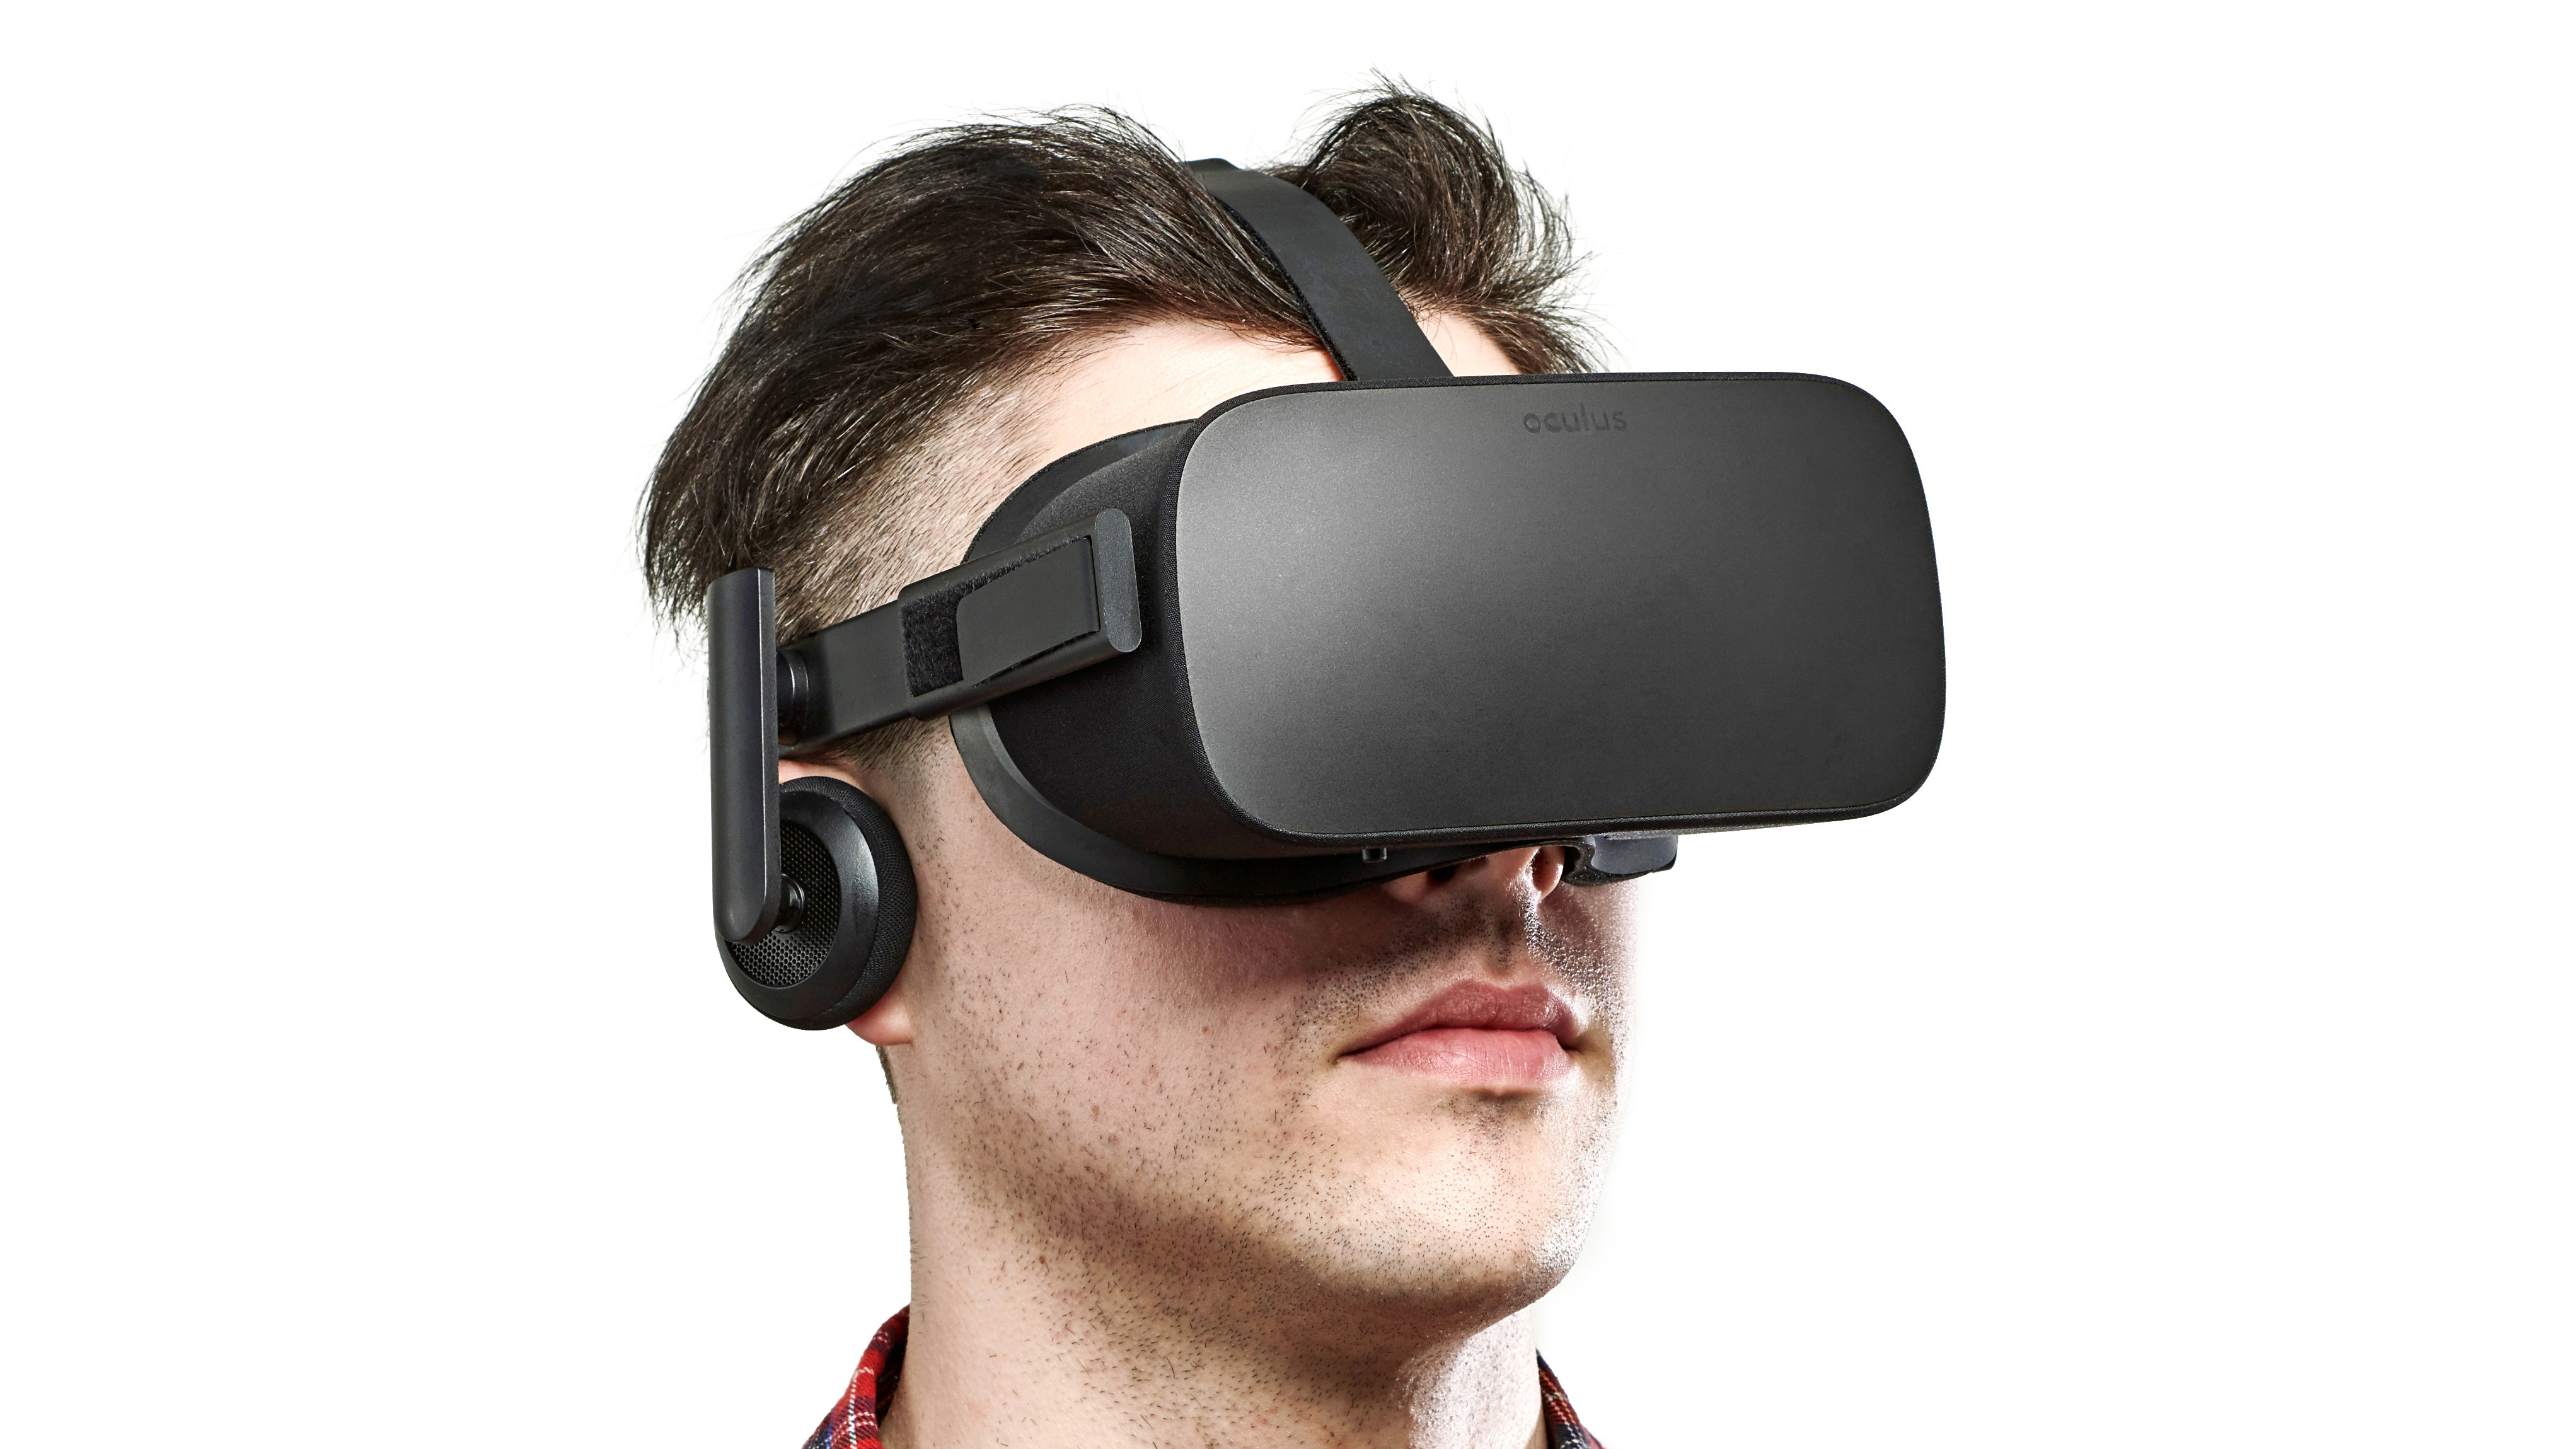 kaos Samarbejdsvillig Analytiker Oculus Rift review | TechRadar